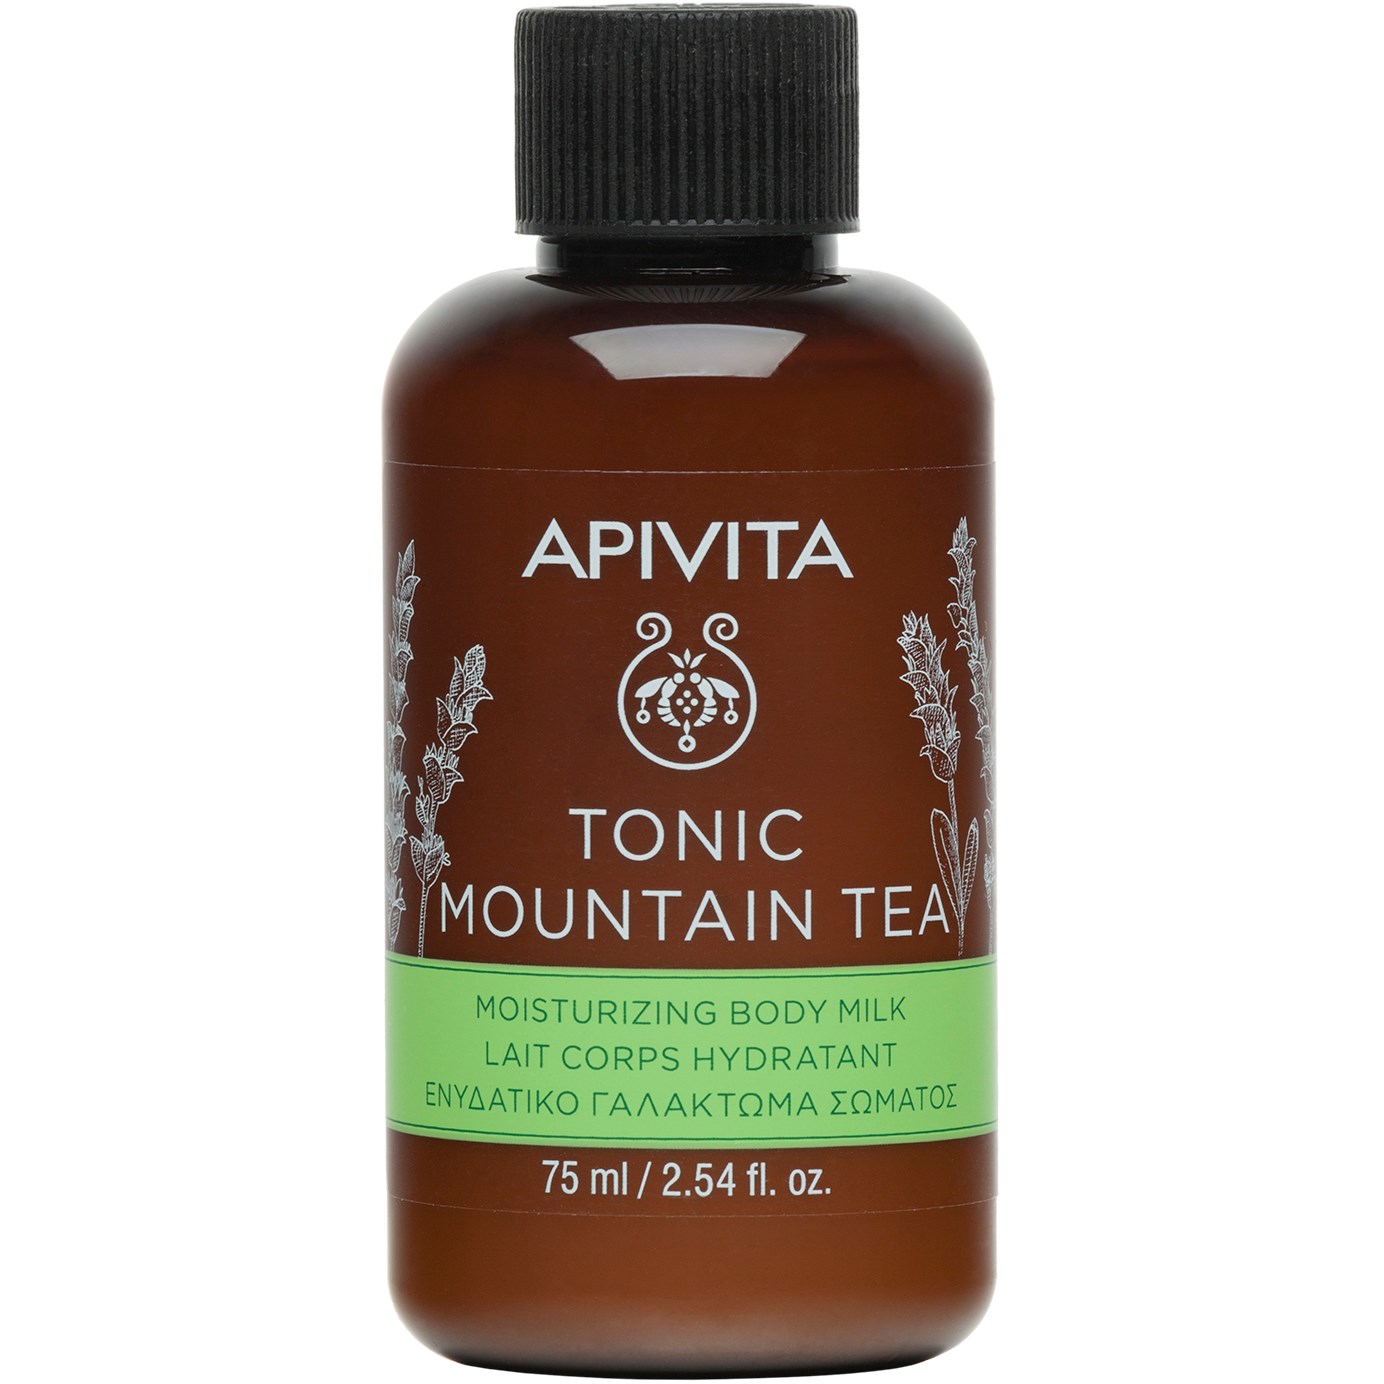 APIVITA Tonic Mountain Tea Travel Size Moisturizing Body Milk with Mou